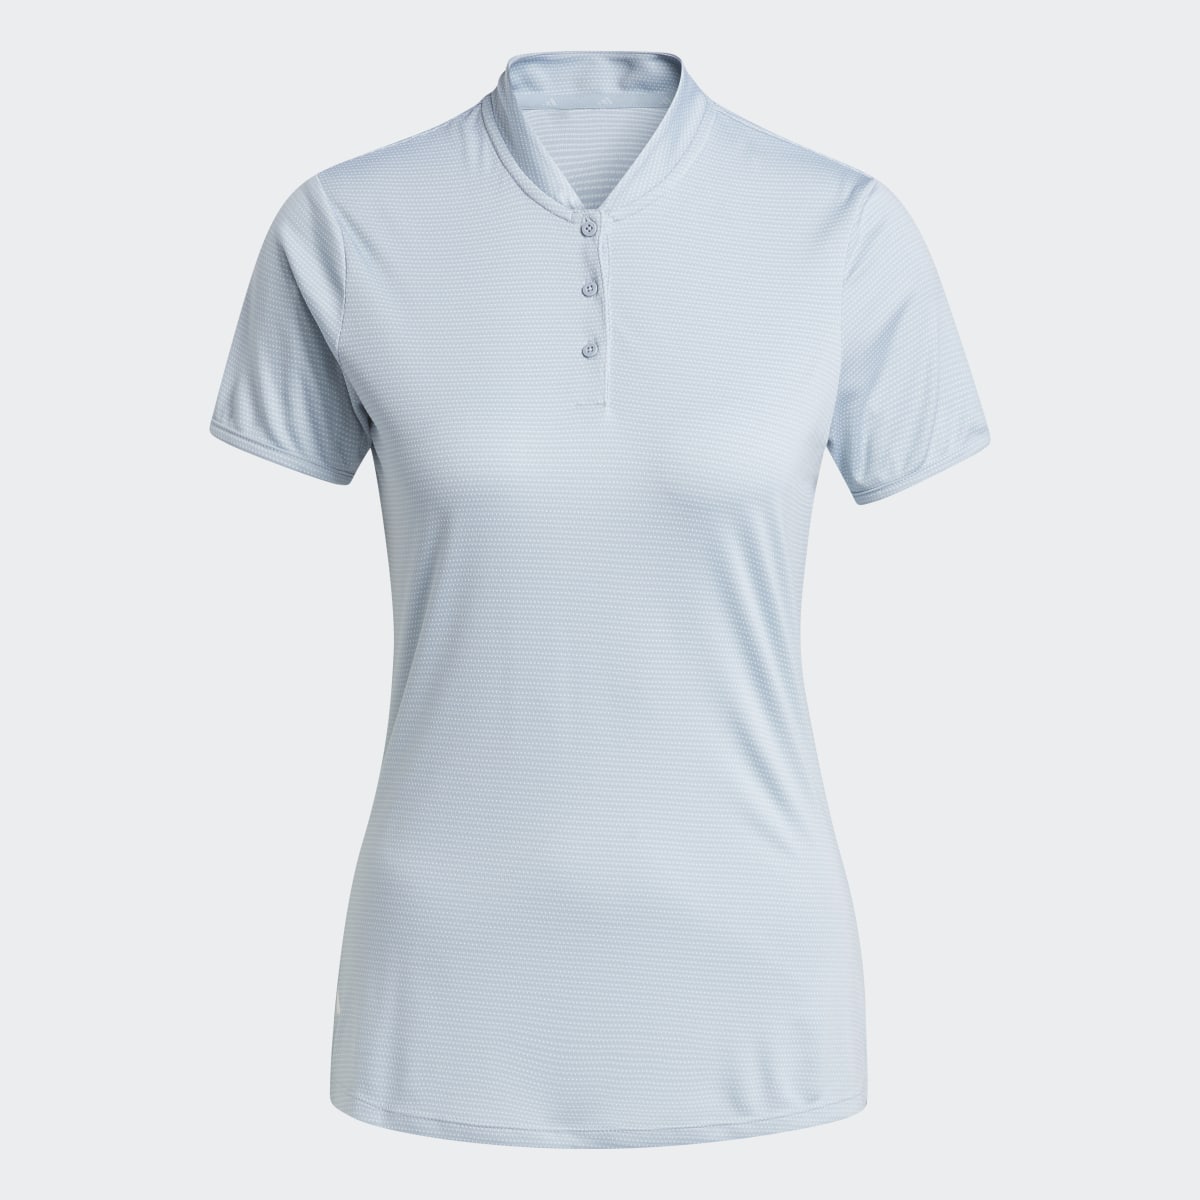 Adidas Essentials Dot Polo Shirt. 5